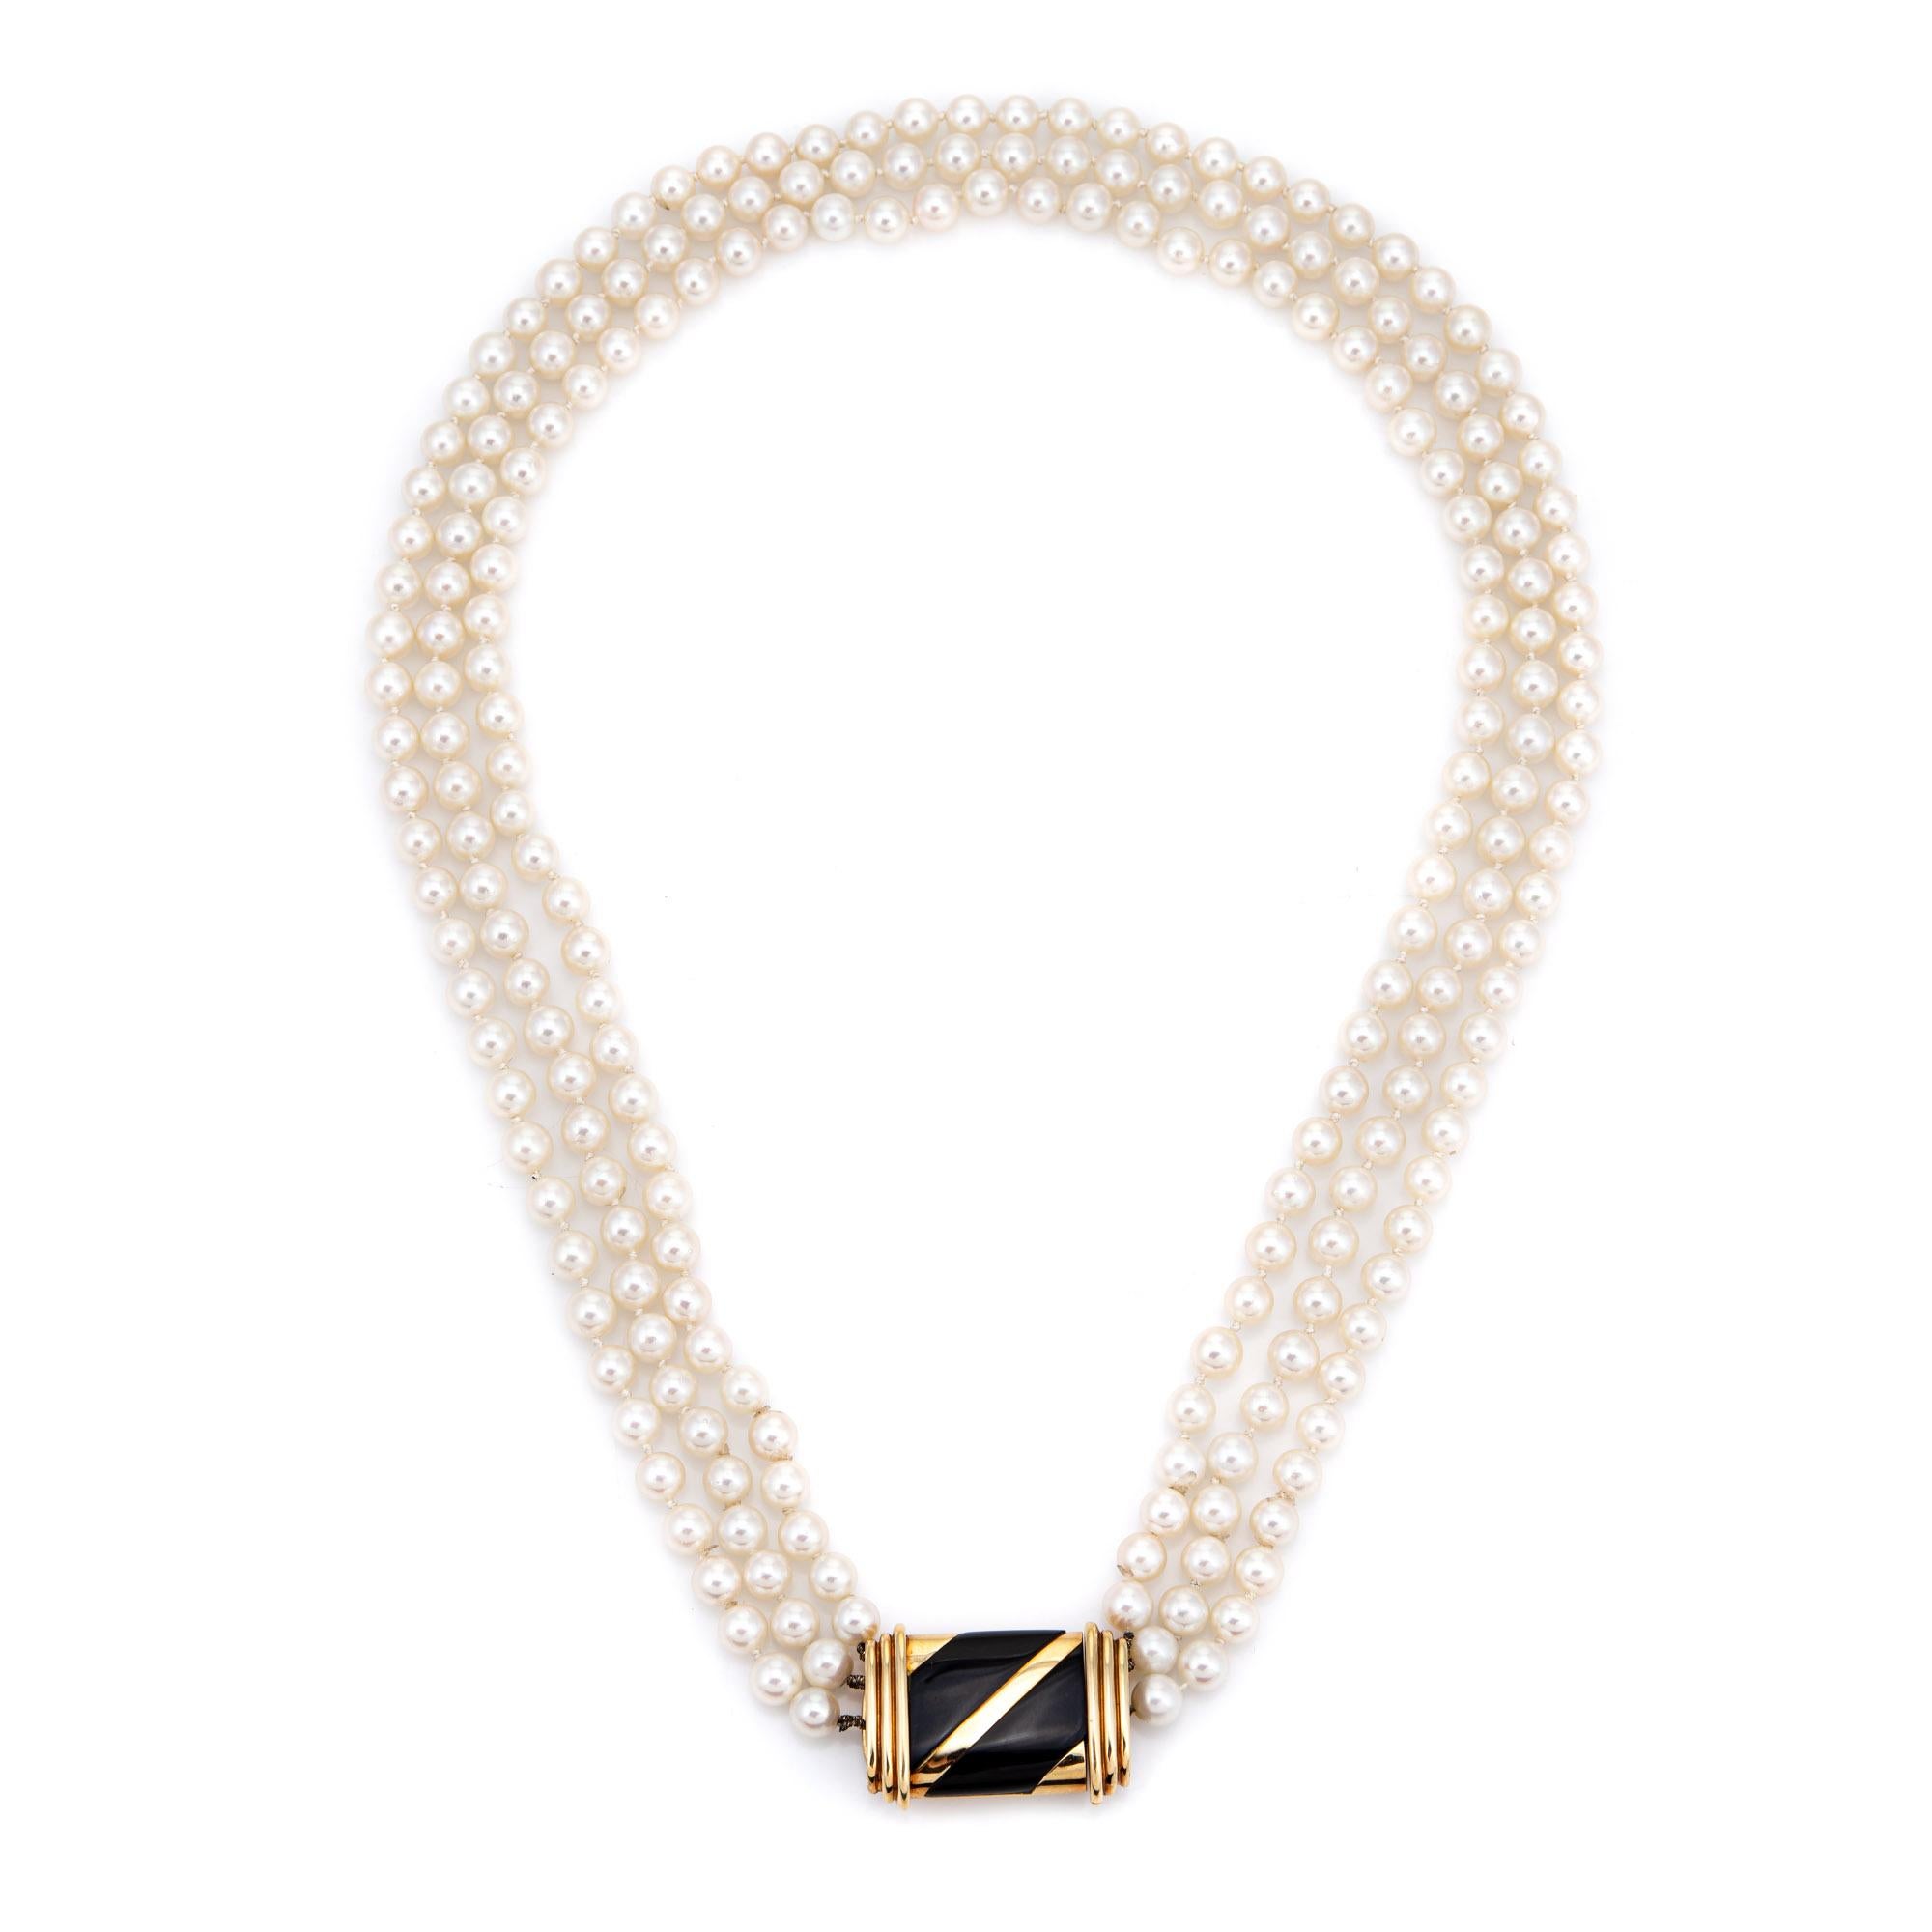 Stilvolle Cartier-Zuchtperlenkette mit dreifachem Ständer (ca. 1960er bis 1970er Jahre) und einem Verschluss mit Onyxeinlage aus 18 Karat Gold.  

Die Zuchtperlen sind einheitlich groß und messen 6 mm, aufgereiht auf drei Stränge. Die Perlen sind